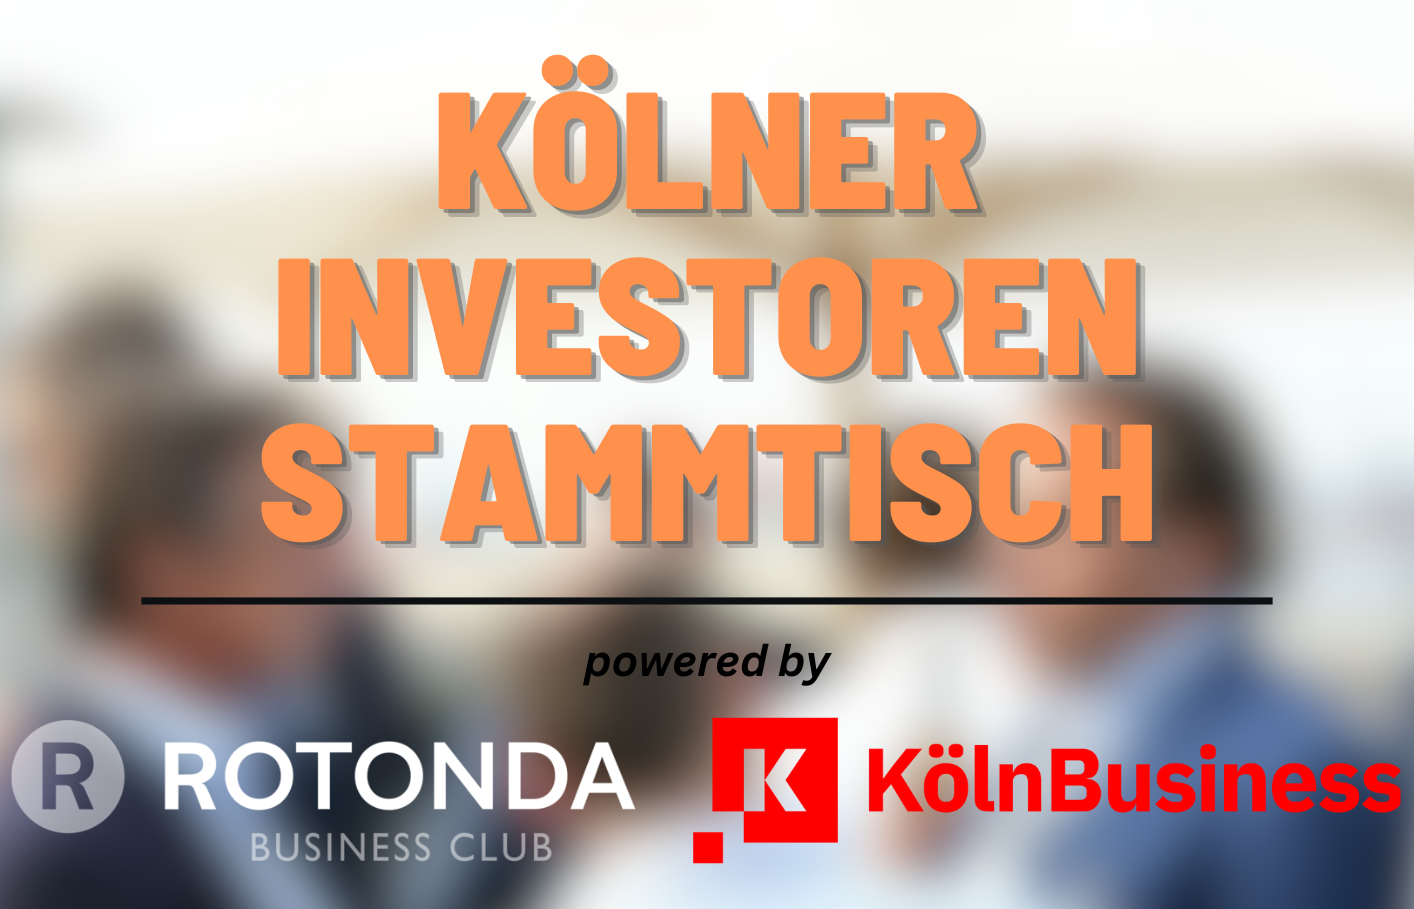 Kölner Investoren Stammtisch